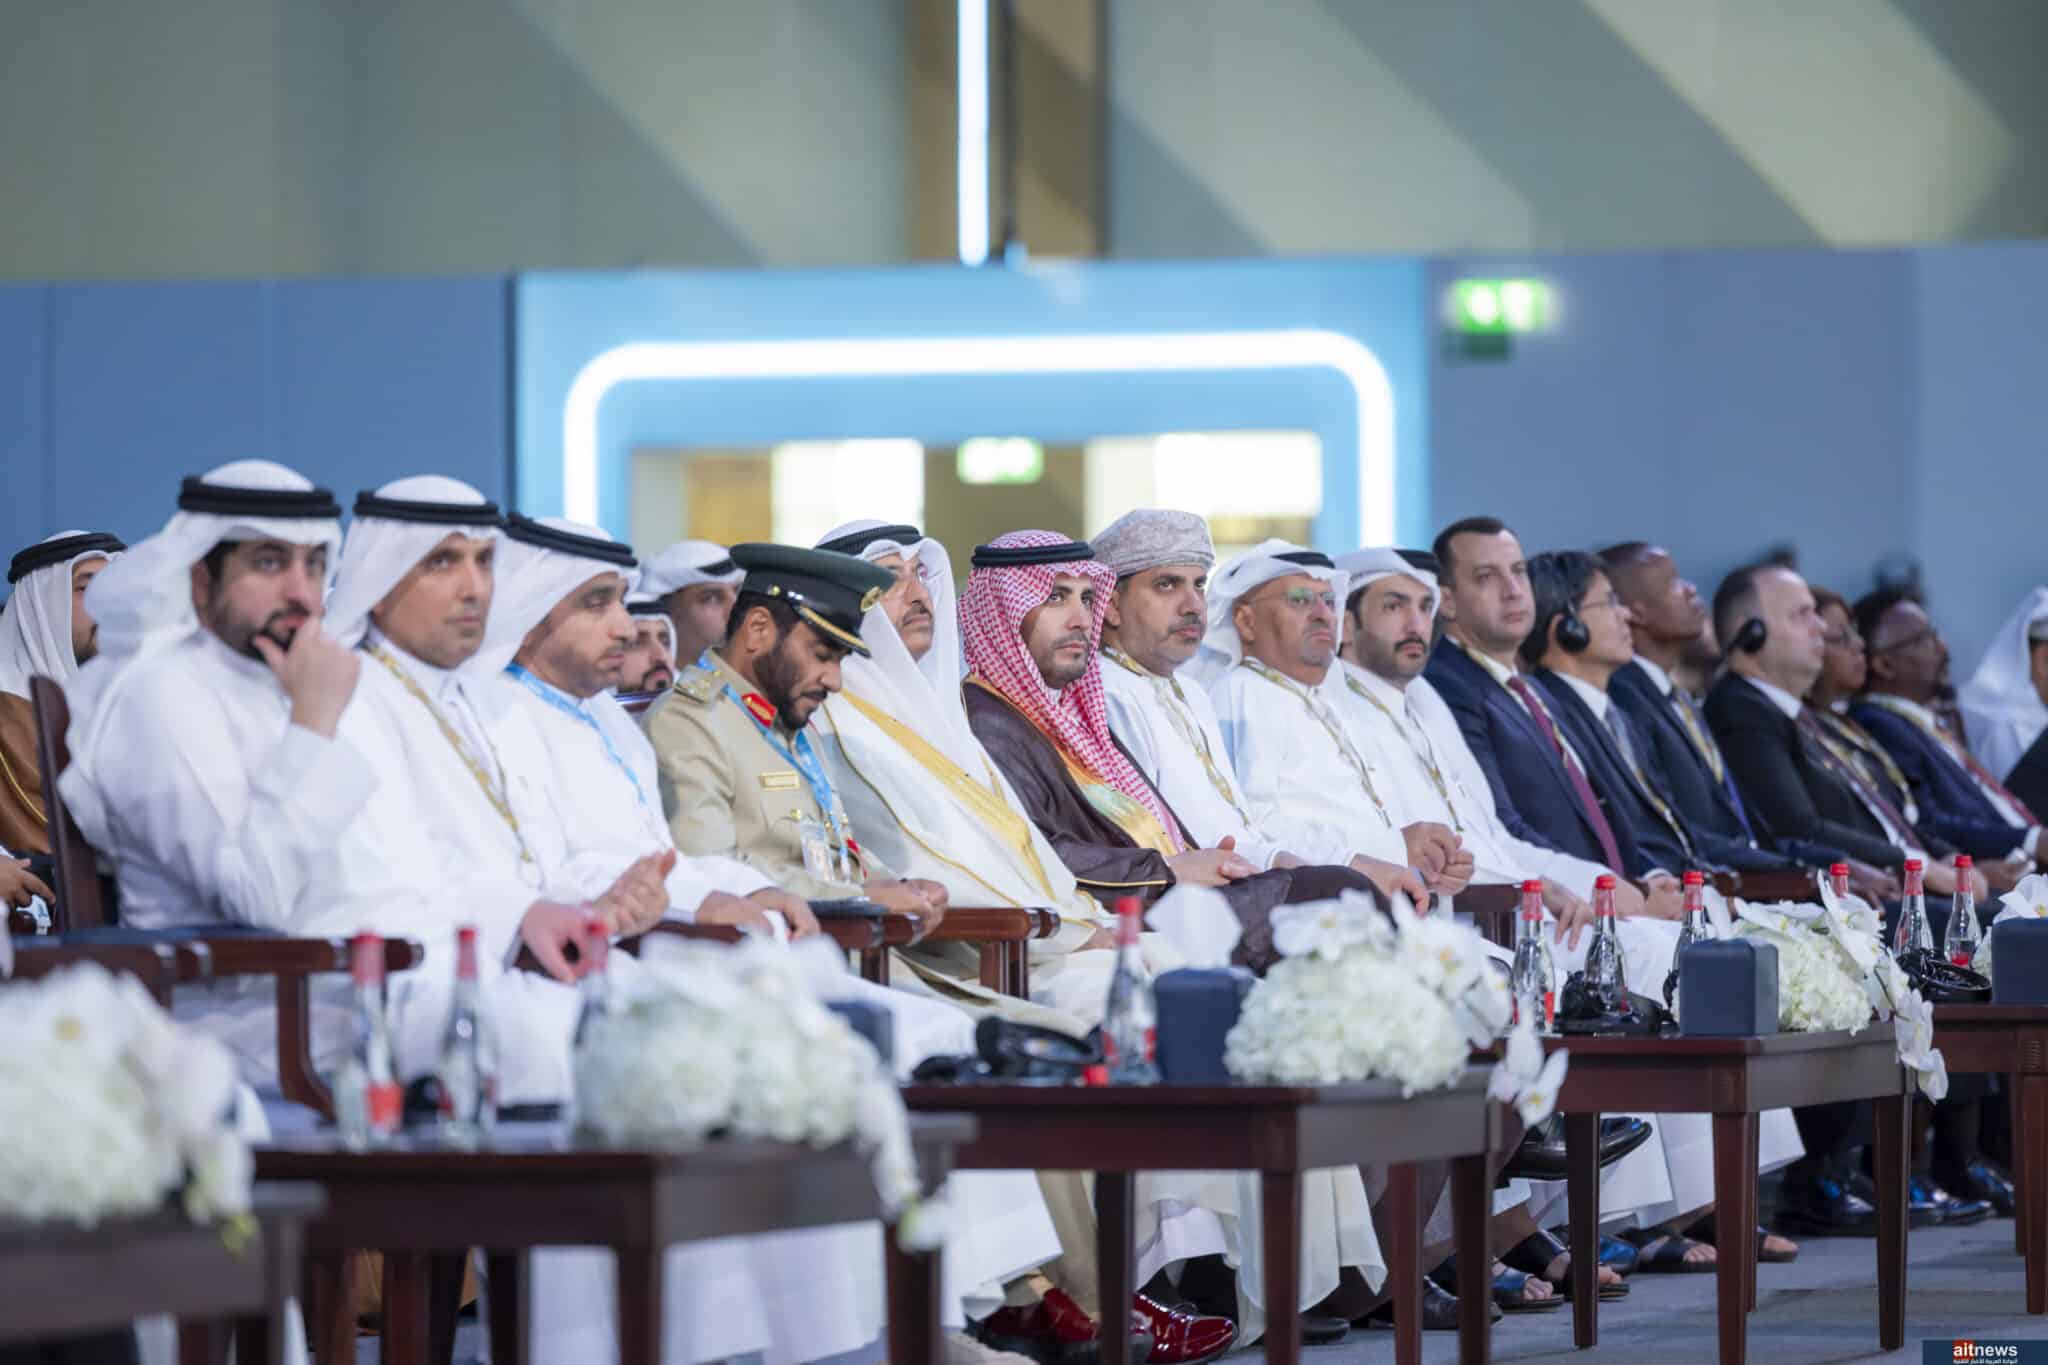 معالي الدكتور محمد بن سعود التميمي، محافظ هيئة الاتصالات والفضاء والتقنية في المملكة العربية السعودية، خلال افتتاح أعمال المؤتمر العالمي للاتصالات الراديوية "WRC23"